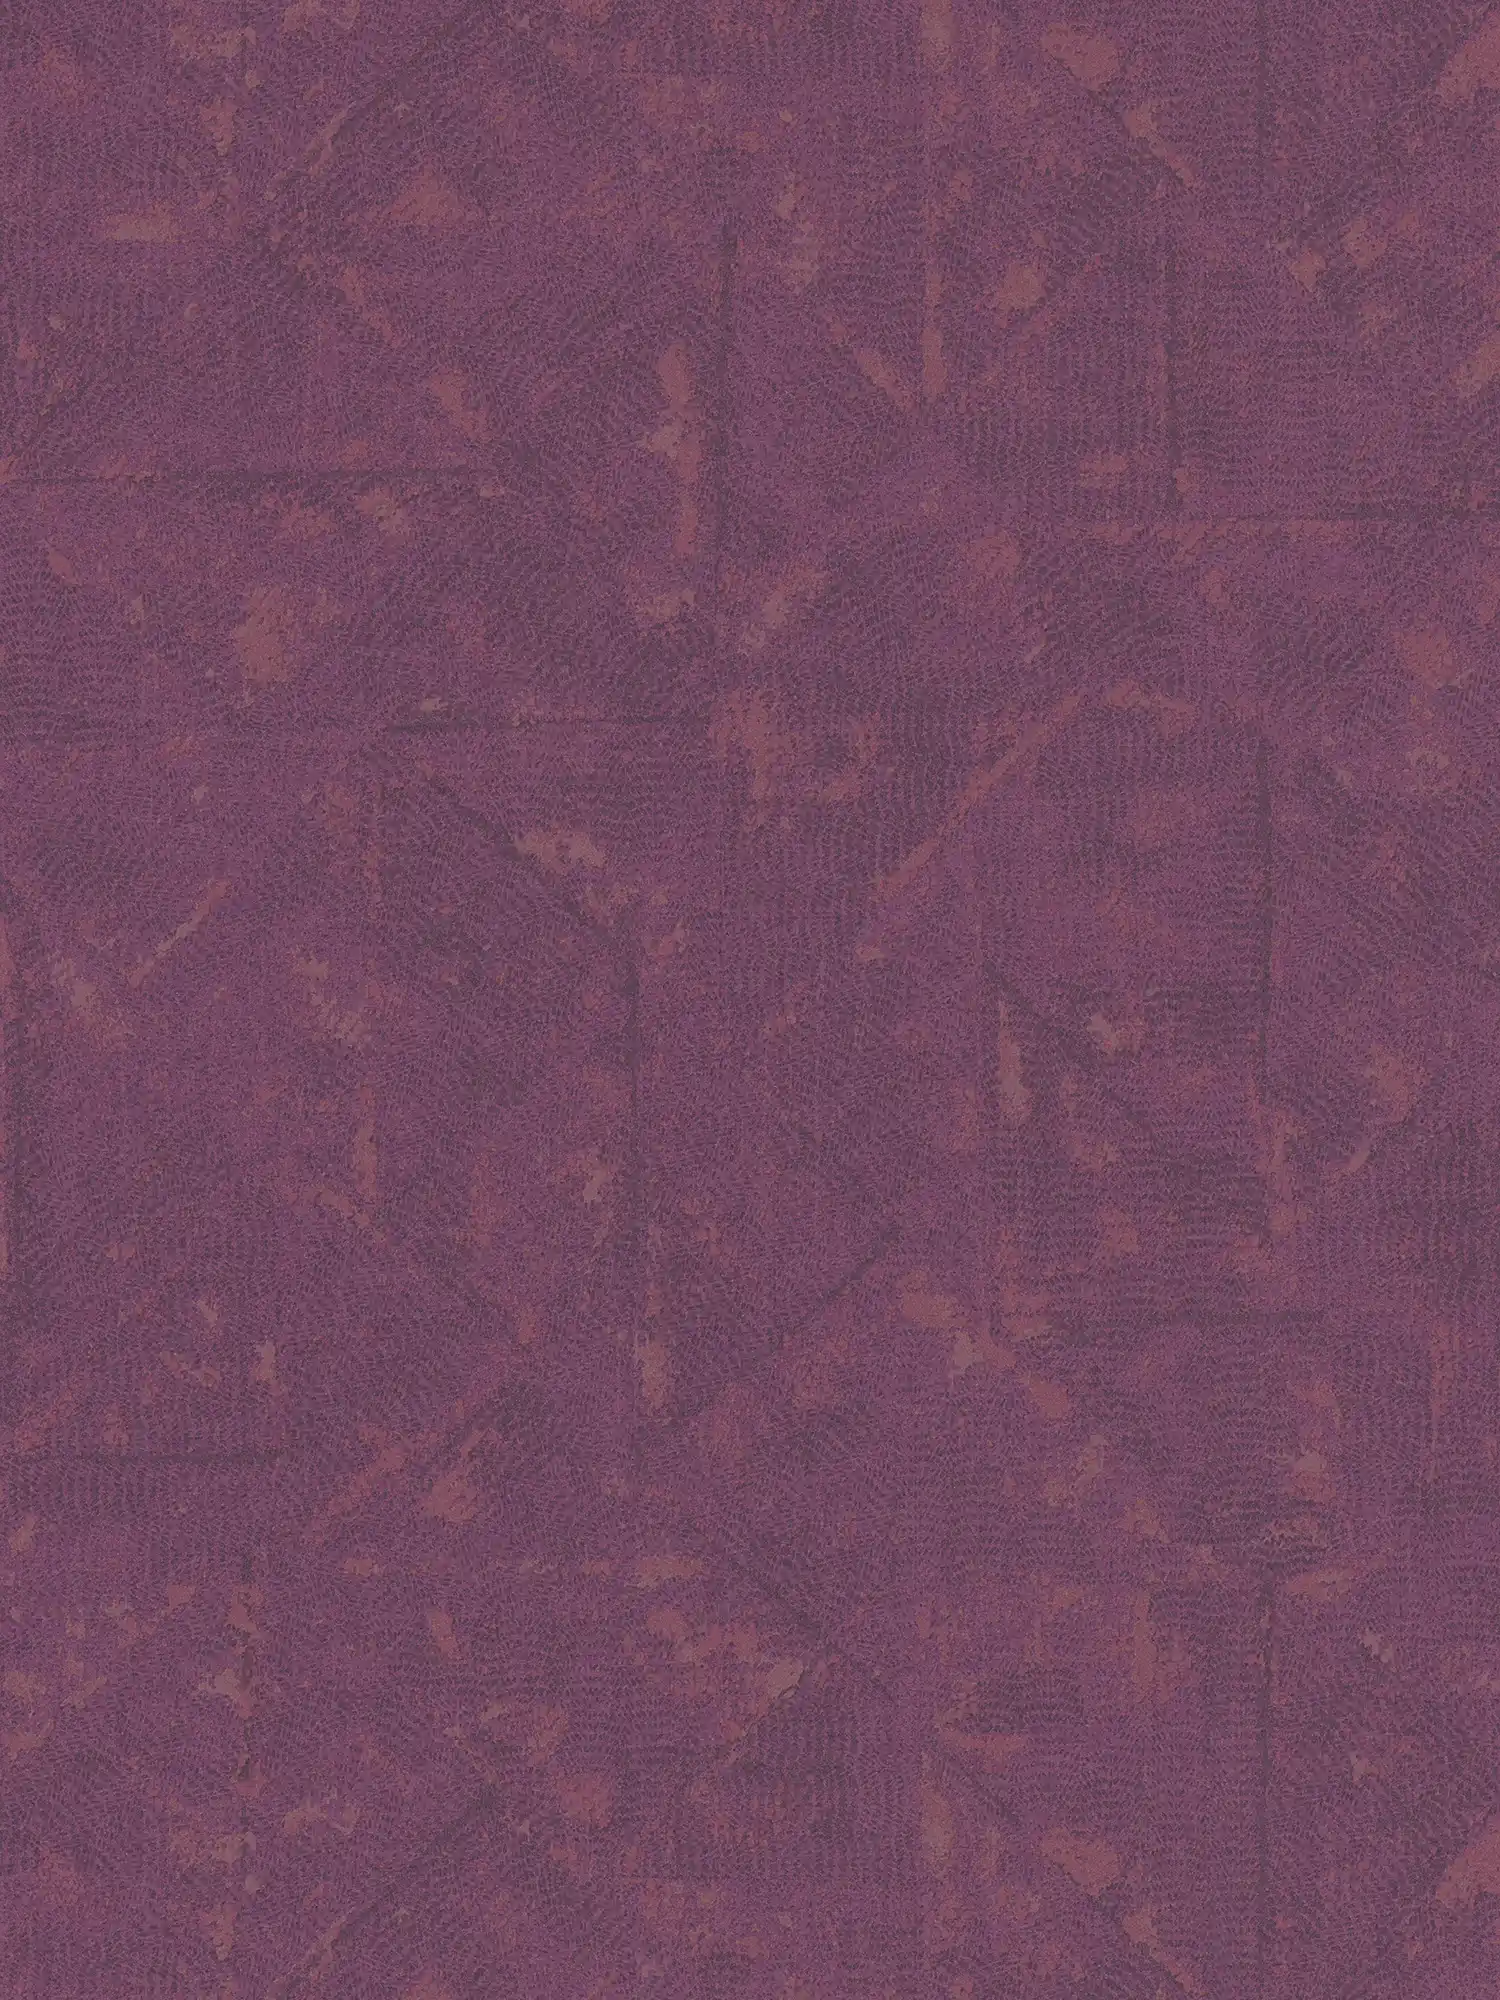 Vliesbehang magenta met asymmetrisch patroon - violet
